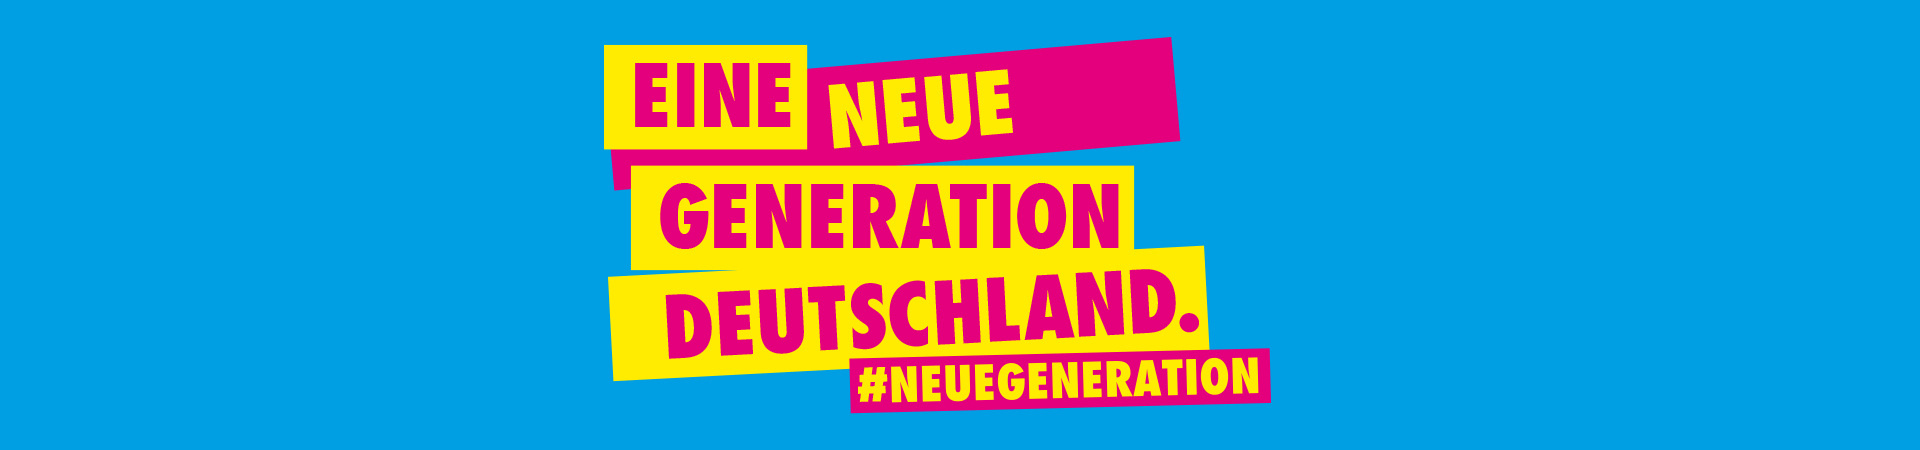 Neue_Generation_Deutschland_Freie_Demokraten